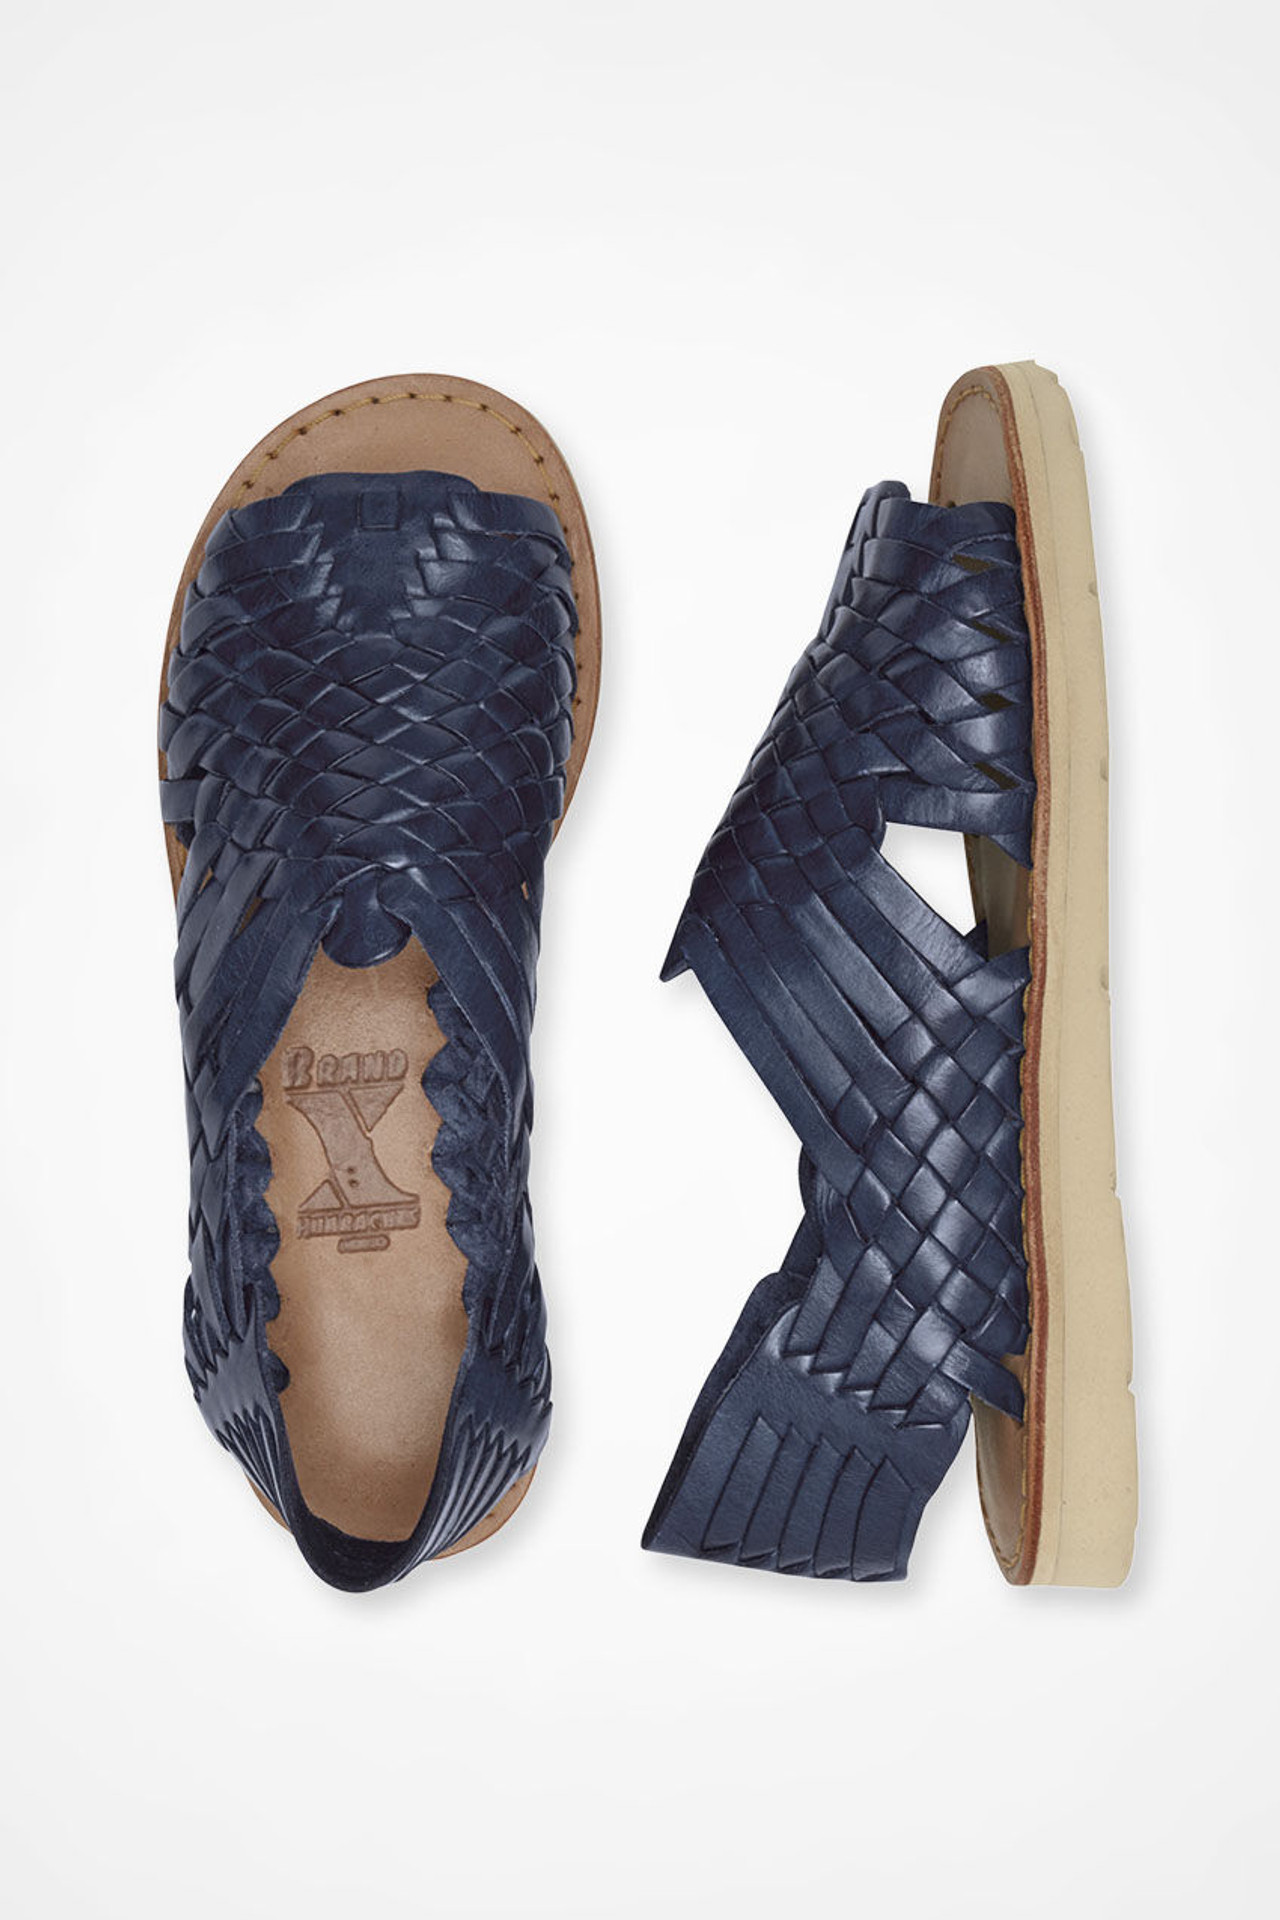 Huarache Sandals by Brand X Huaraches®